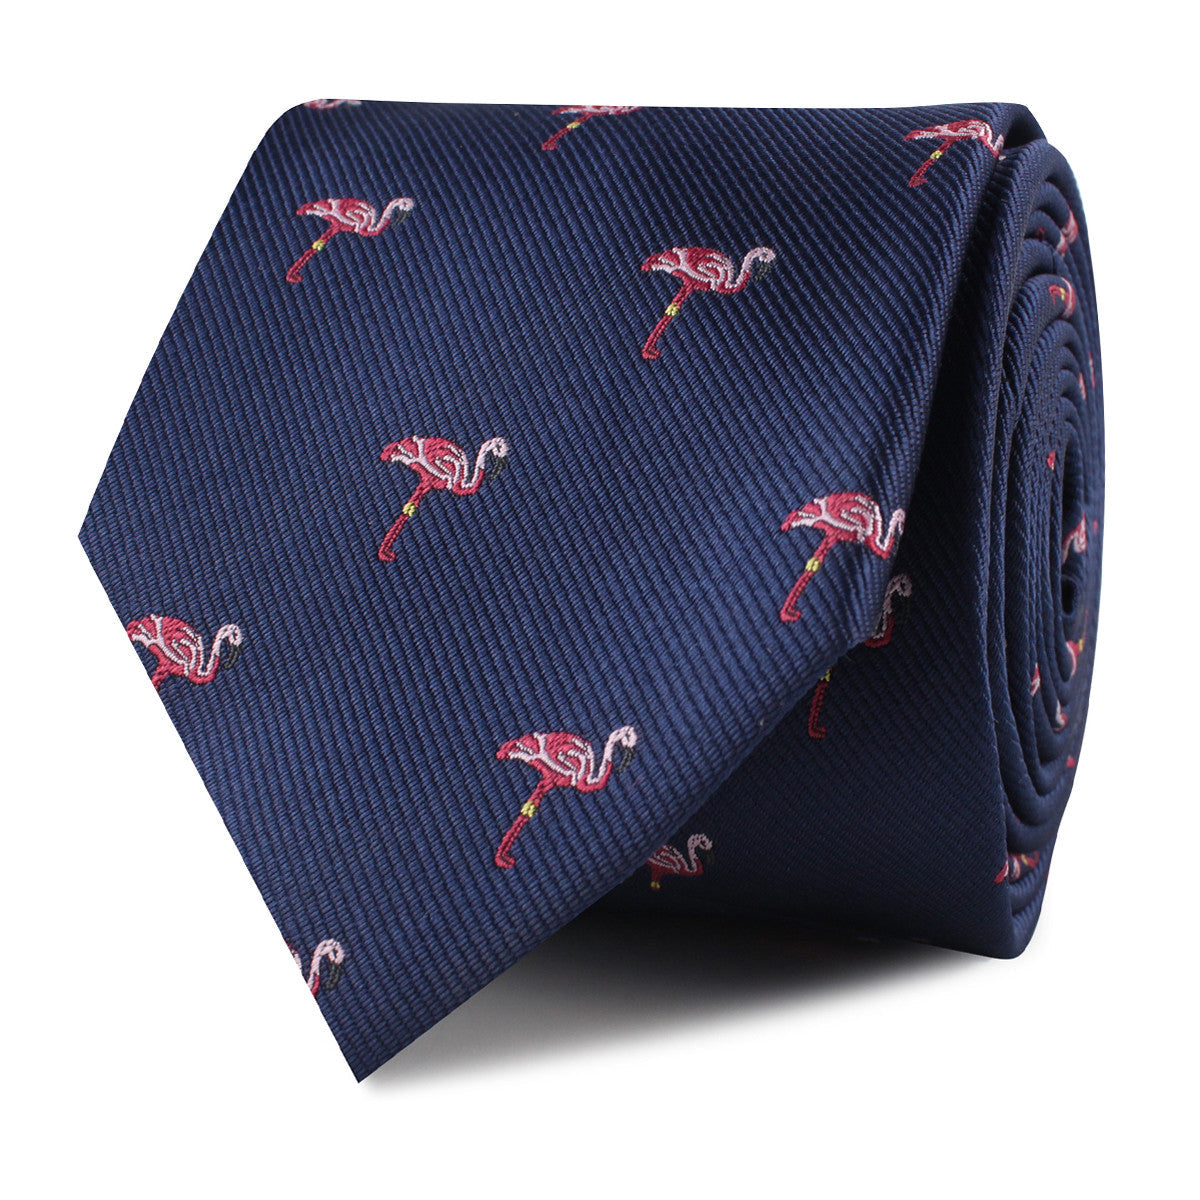 Flamingo Tie - Skinny